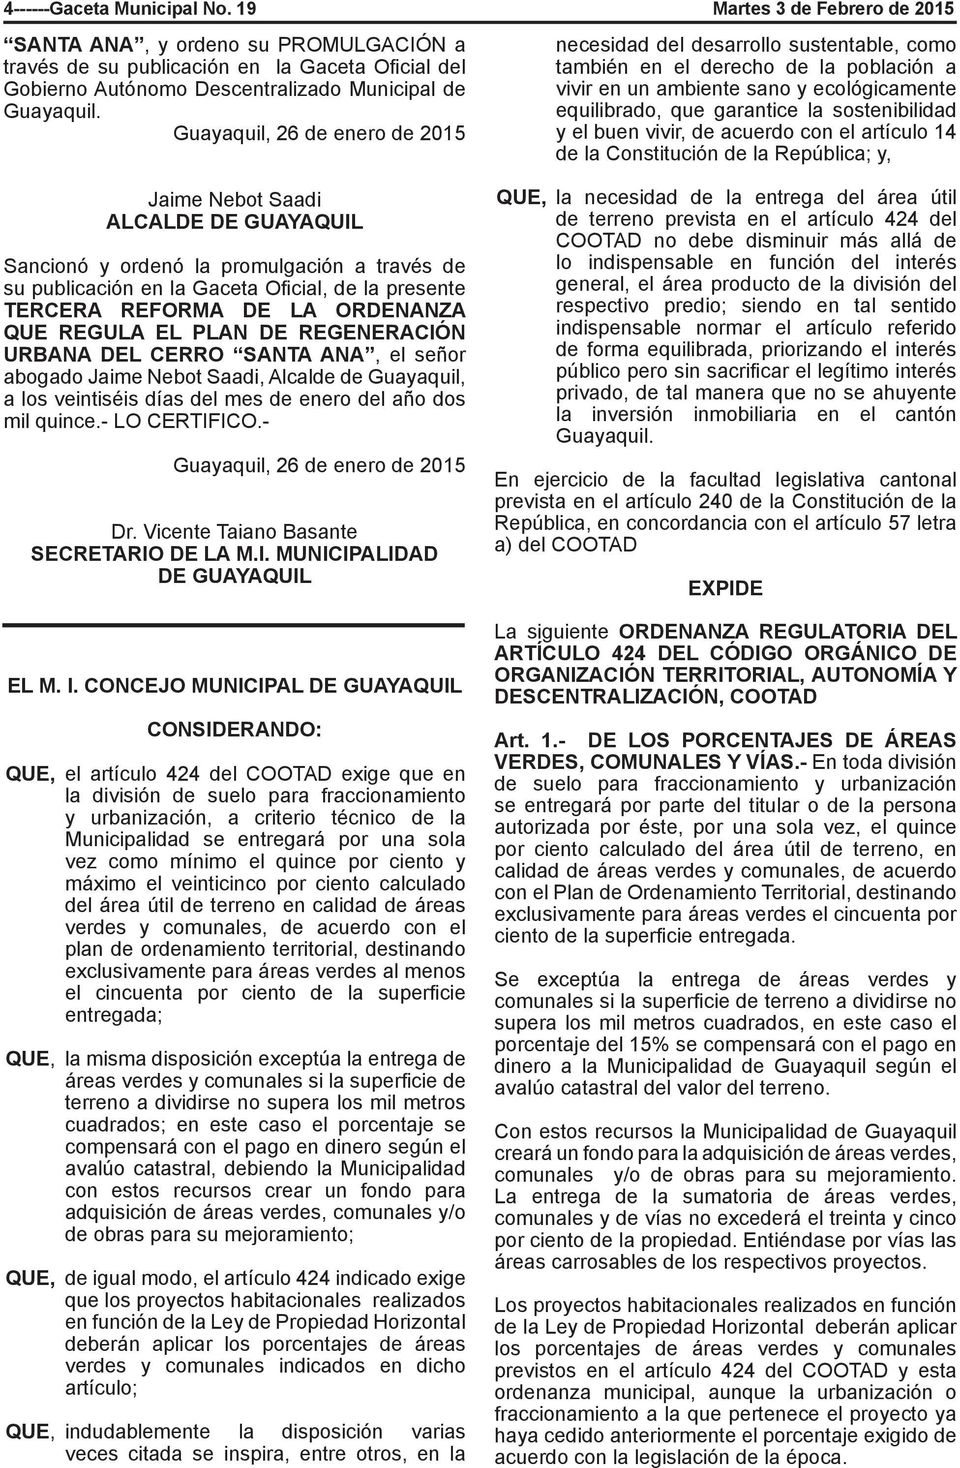 Guayaquil, 26 de enero de 2015 Jaime Nebot Saadi ALCALDE Sancionó y ordenó la promulgación a través de su publicación en la Gaceta Oficial, de la presente TERCERA REFORMA DE LA ORDENANZA QUE REGULA